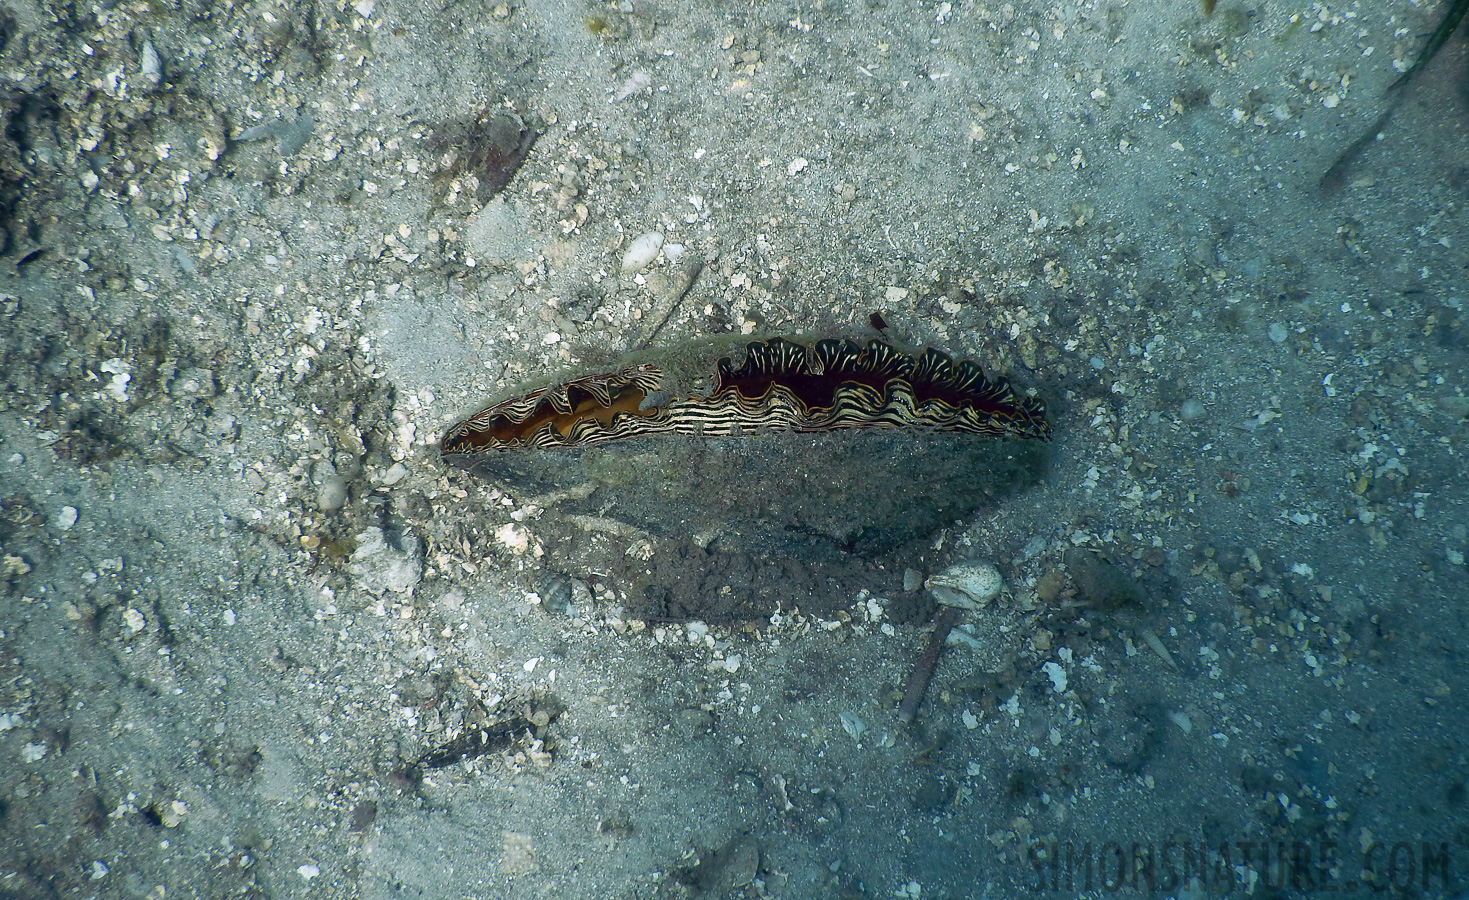 Cardiidae sp [5 mm, 1/800 Sek. bei f / 3.9, ISO 125]